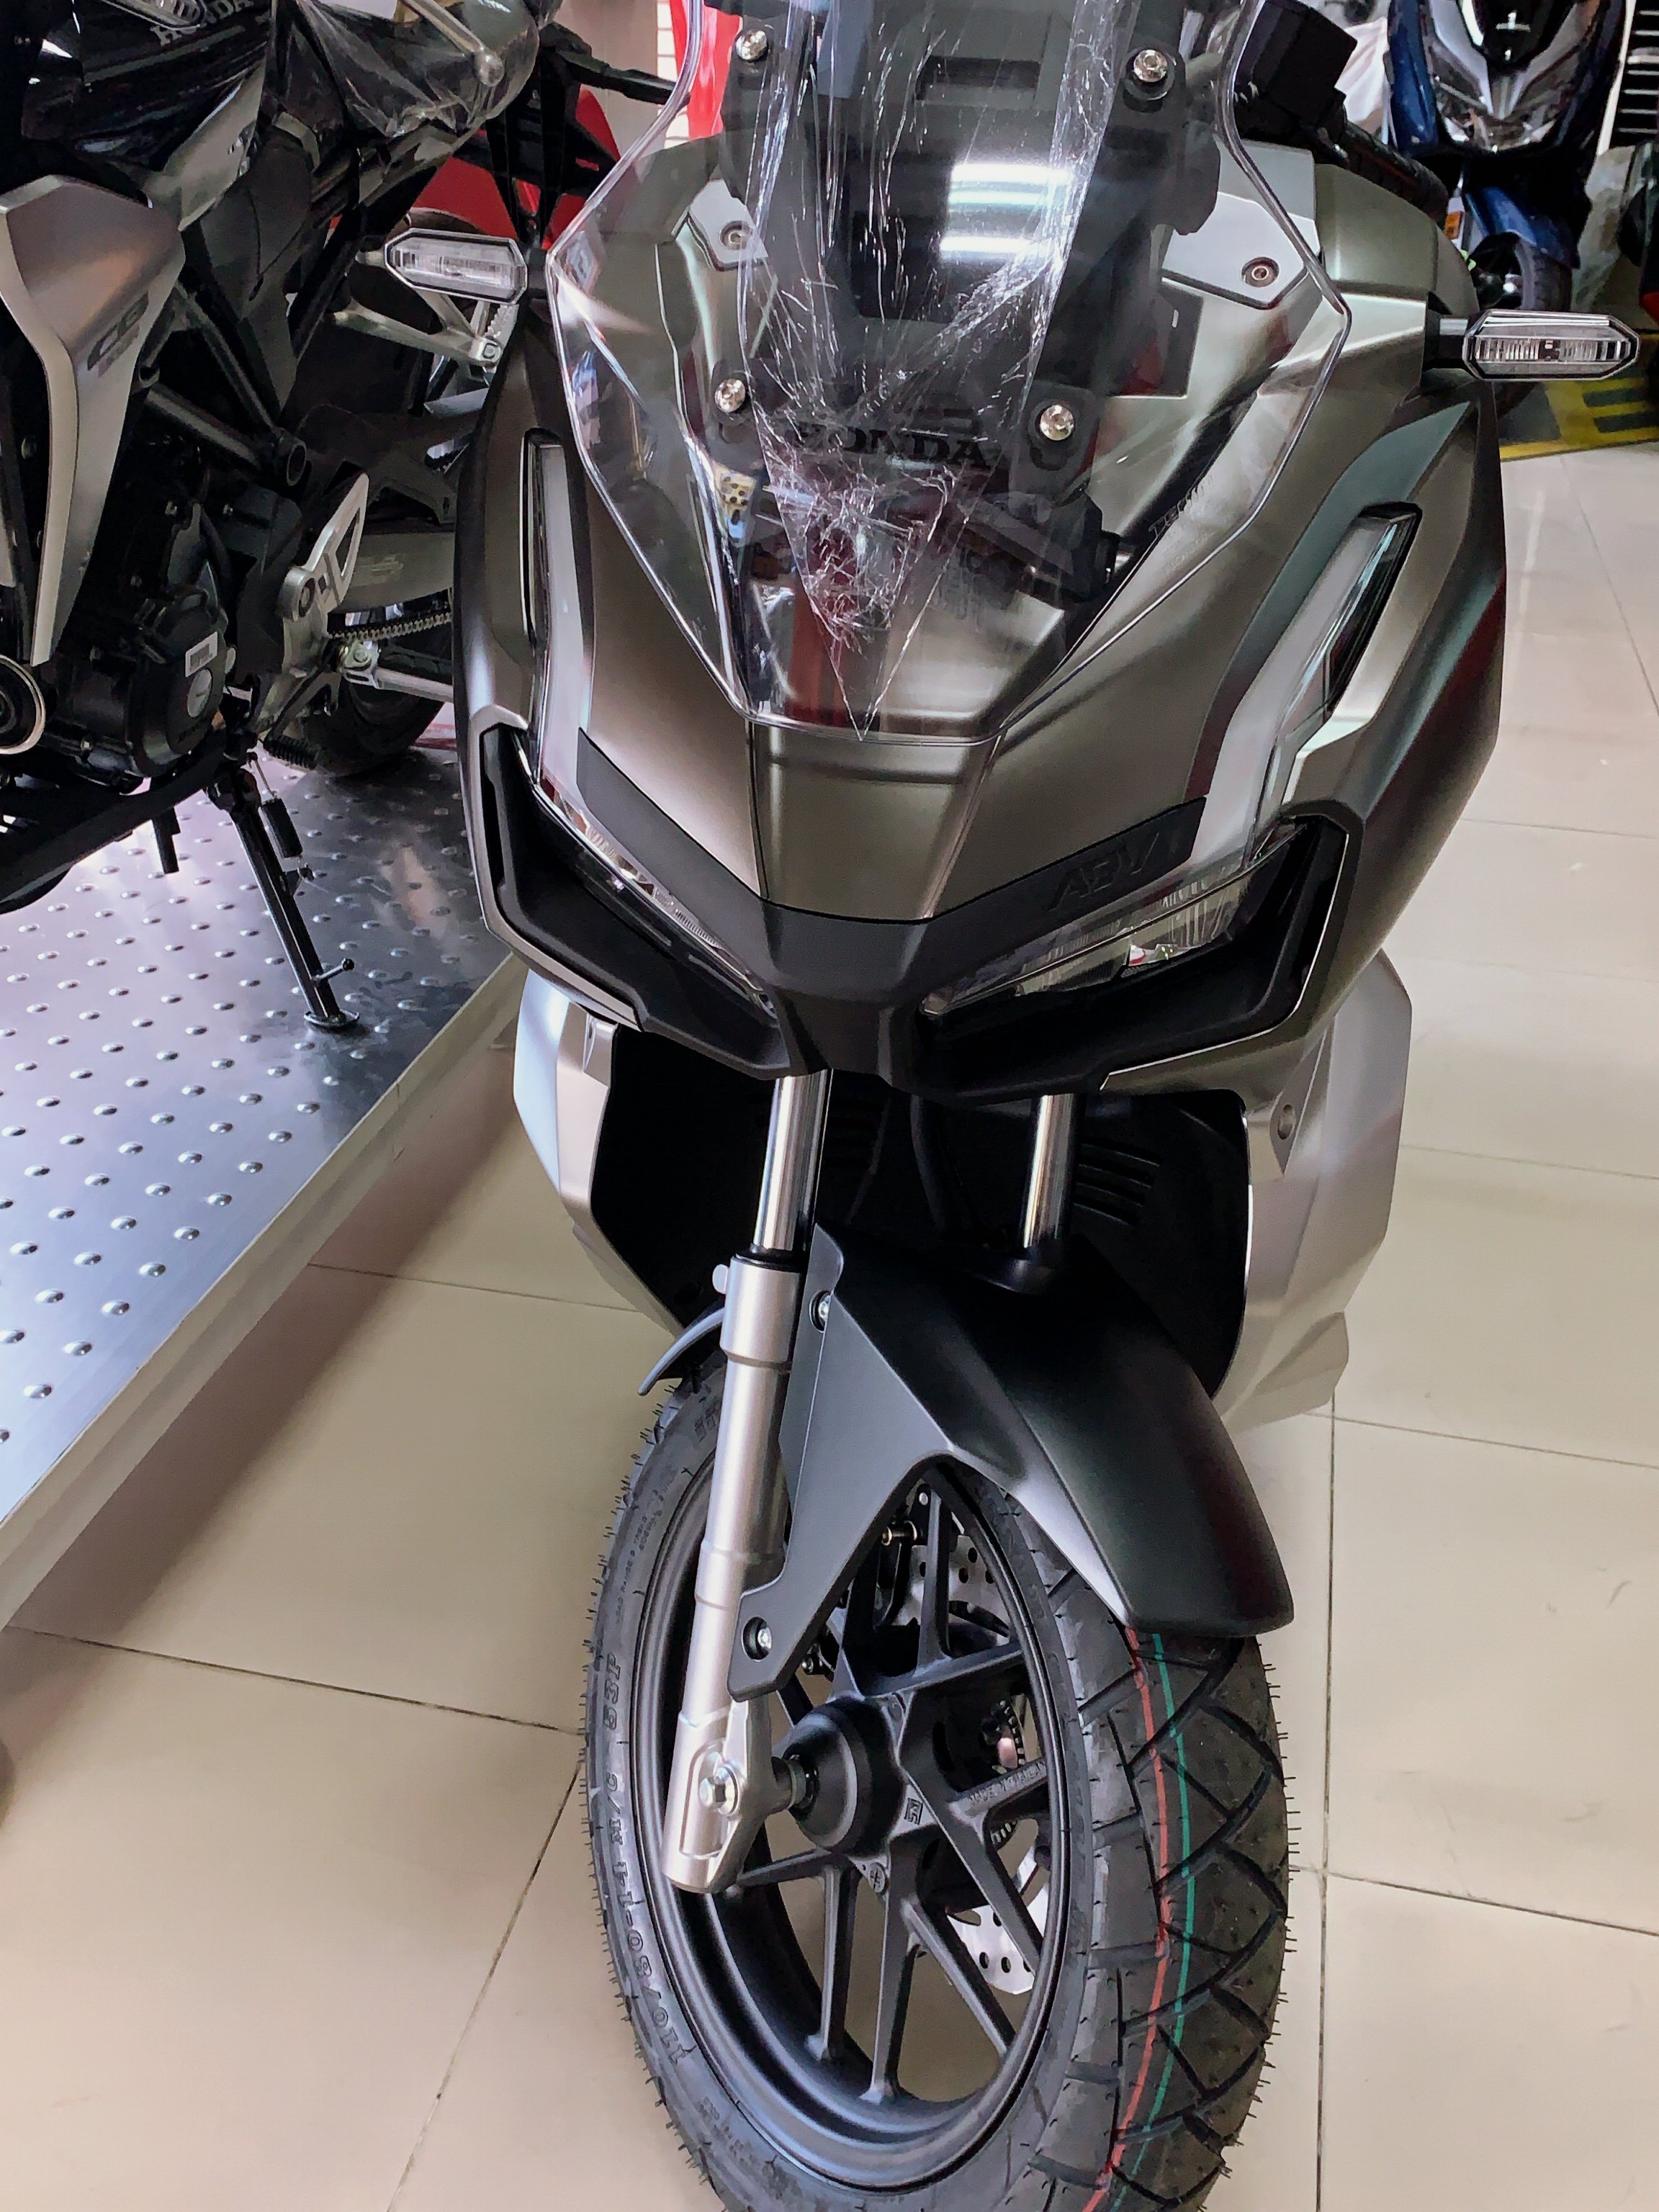 Honda adv 150 malaysia price